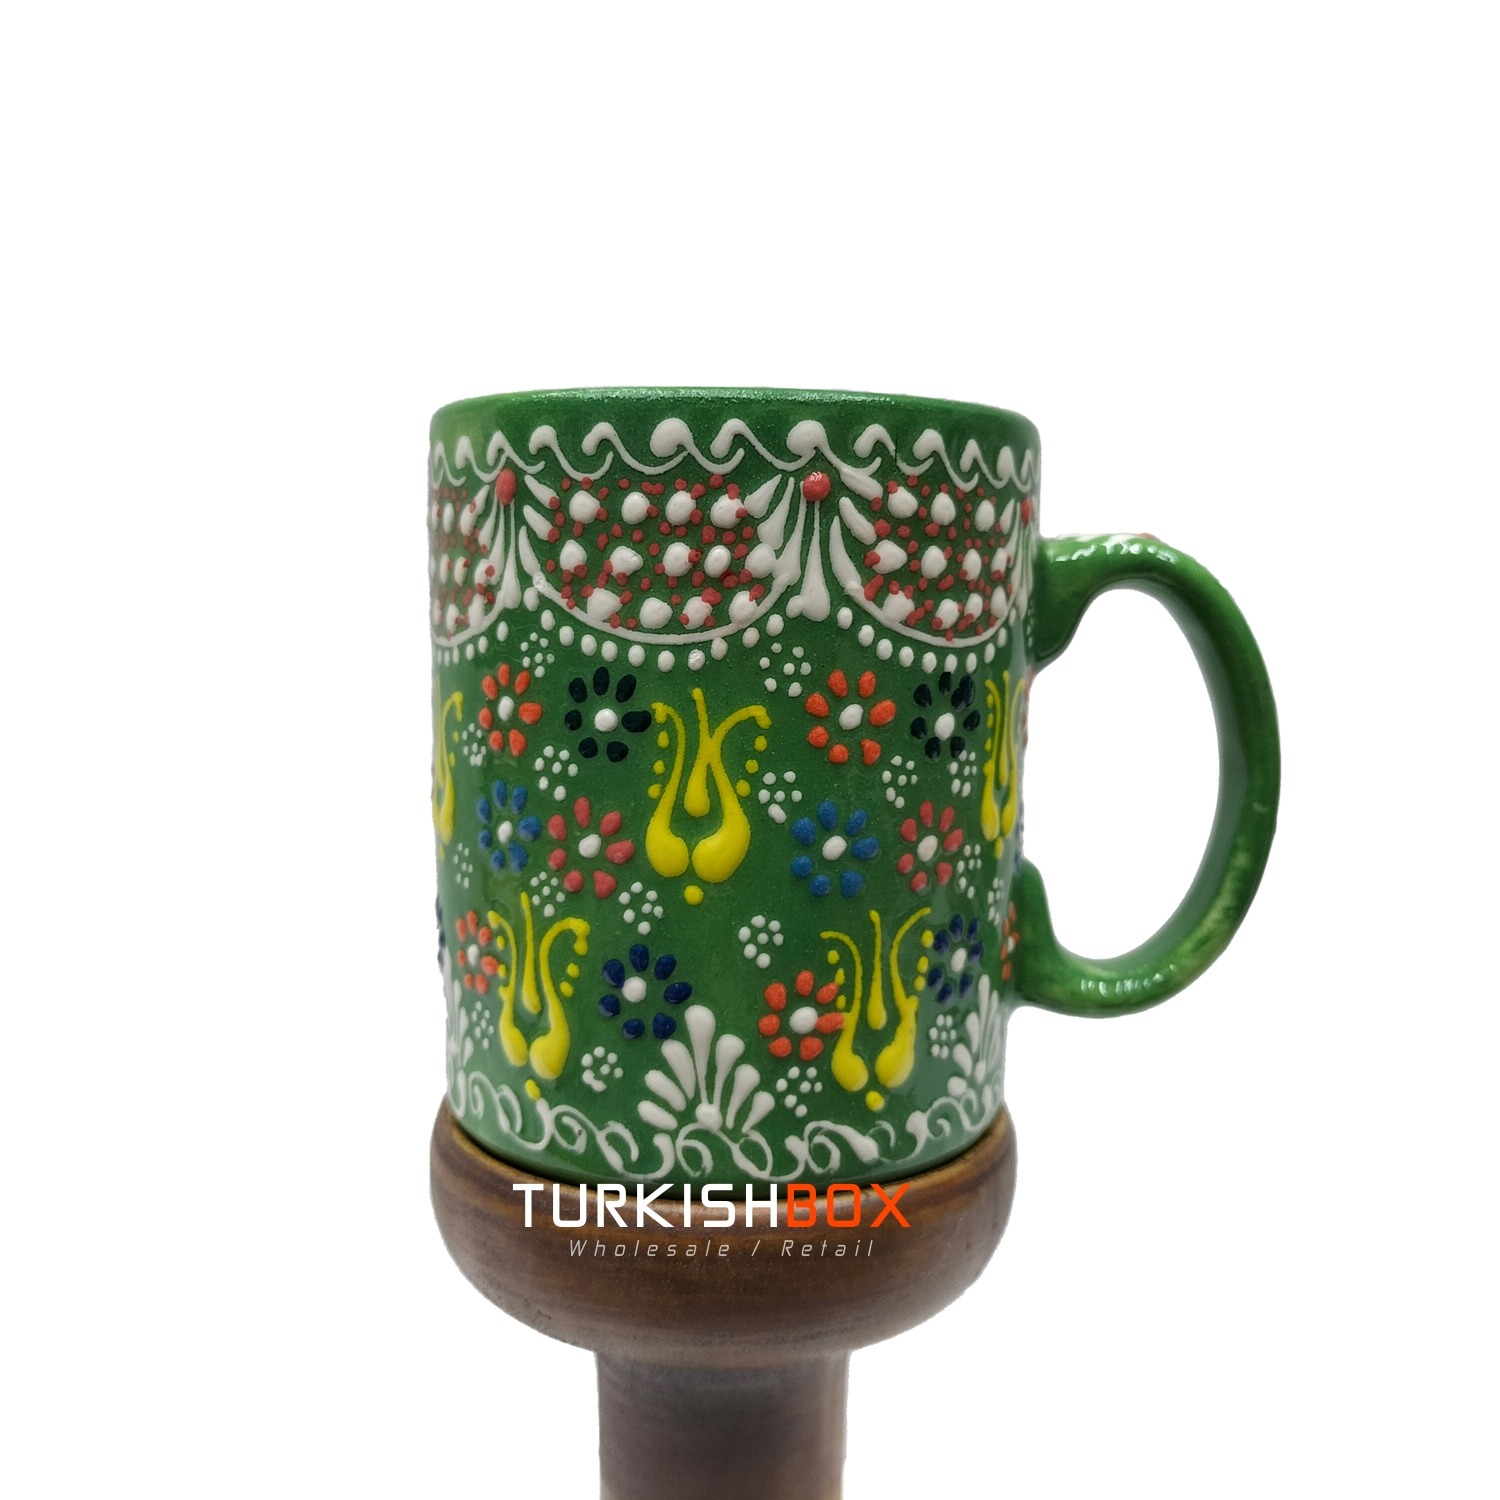 https://turkishbox.com/wp-content/uploads/2022/09/Handmade-Ceramic-Mug-Green.jpg